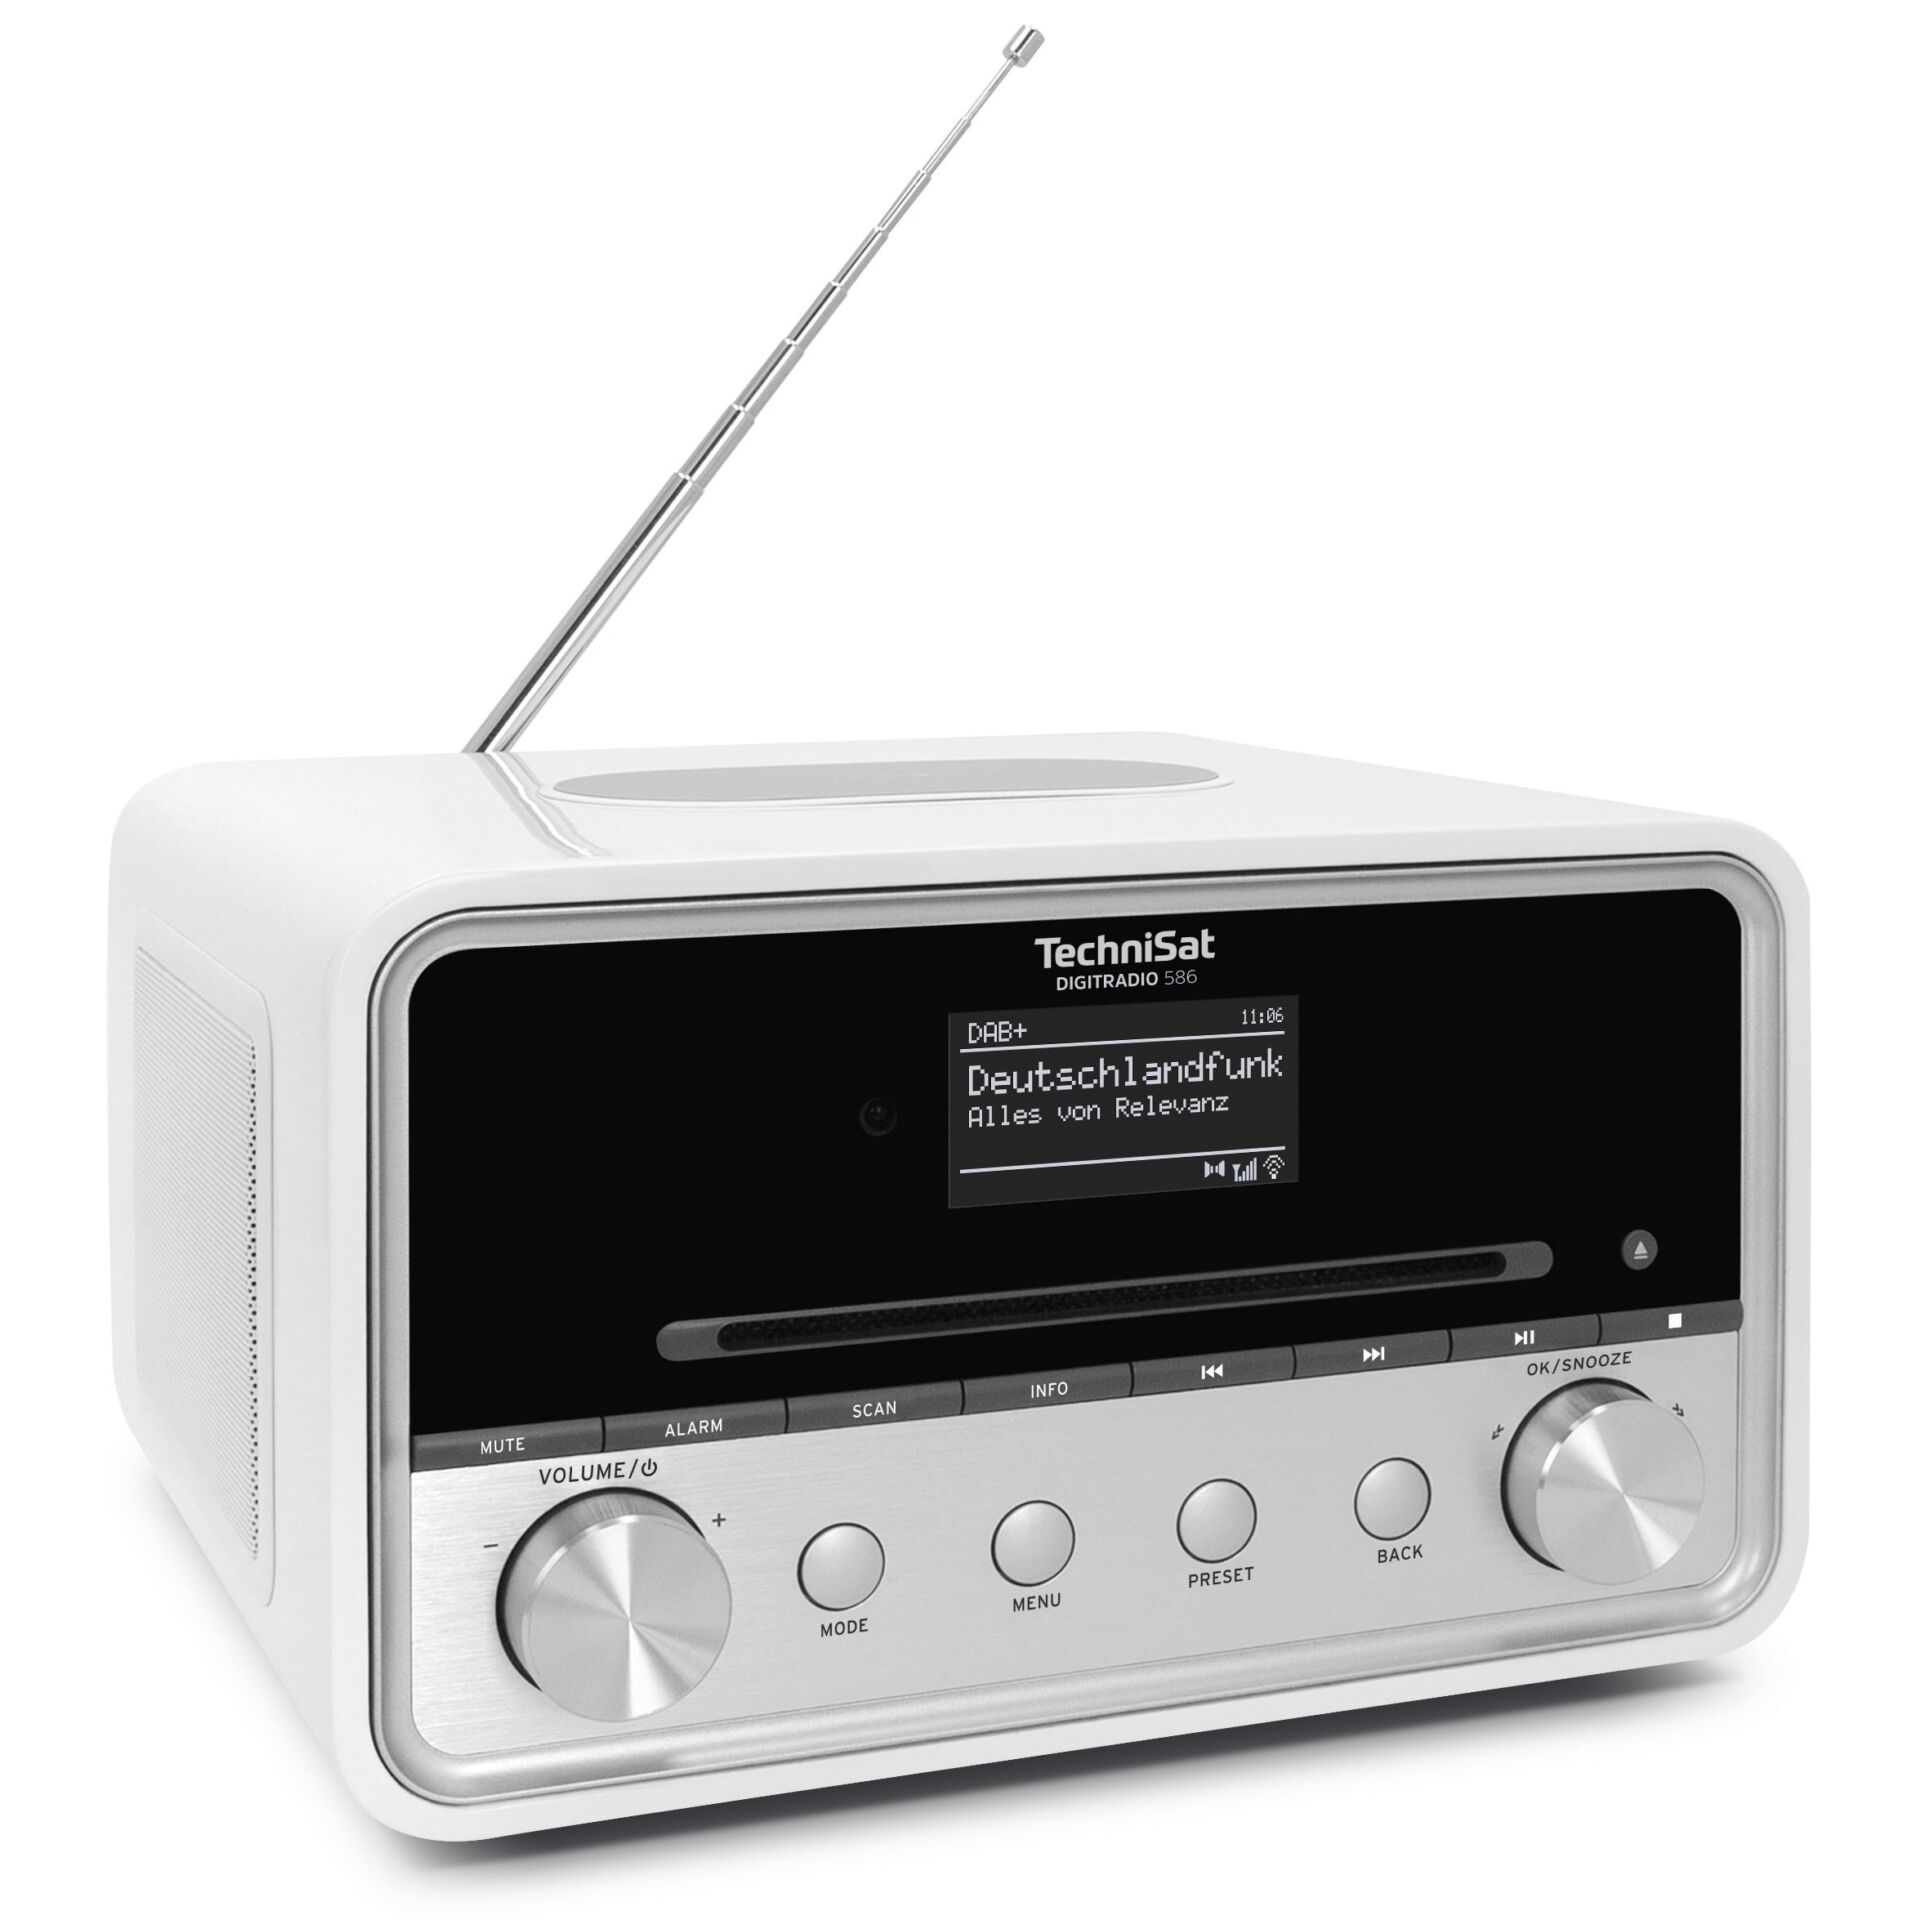 TechniSat DigitRadio 586 weiß, 20W RMS, UKW, DAB+, Internetradio, CD, Bluetooth, Wi-Fi (WLAN), Fernbedienung